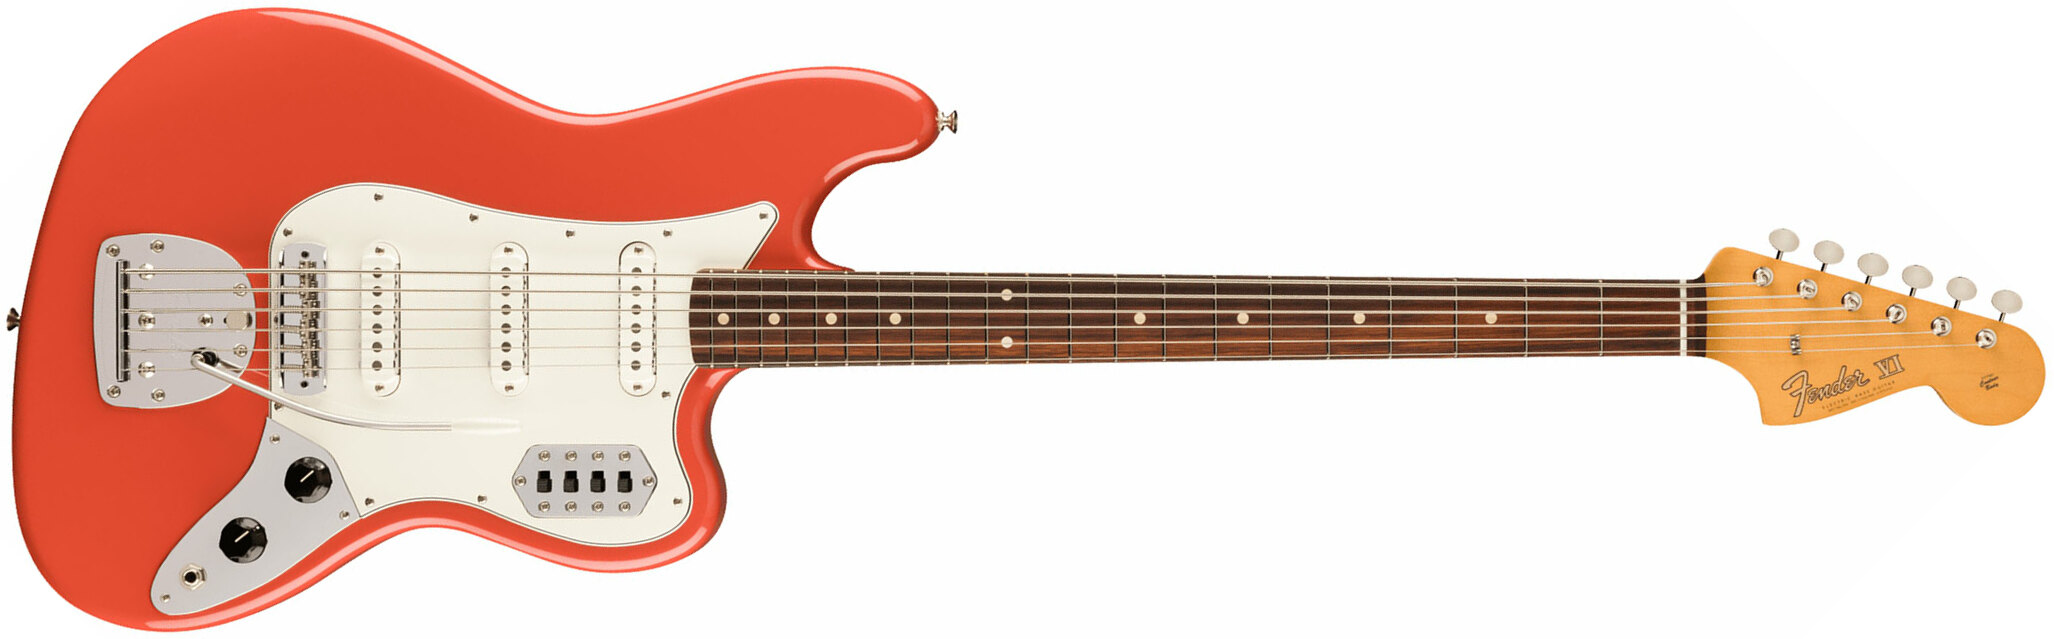 Fender 60s Bass Vi Vintera 2 3s Trem Rw - Fiesta Red - Bariton elektrische gitaar - Main picture